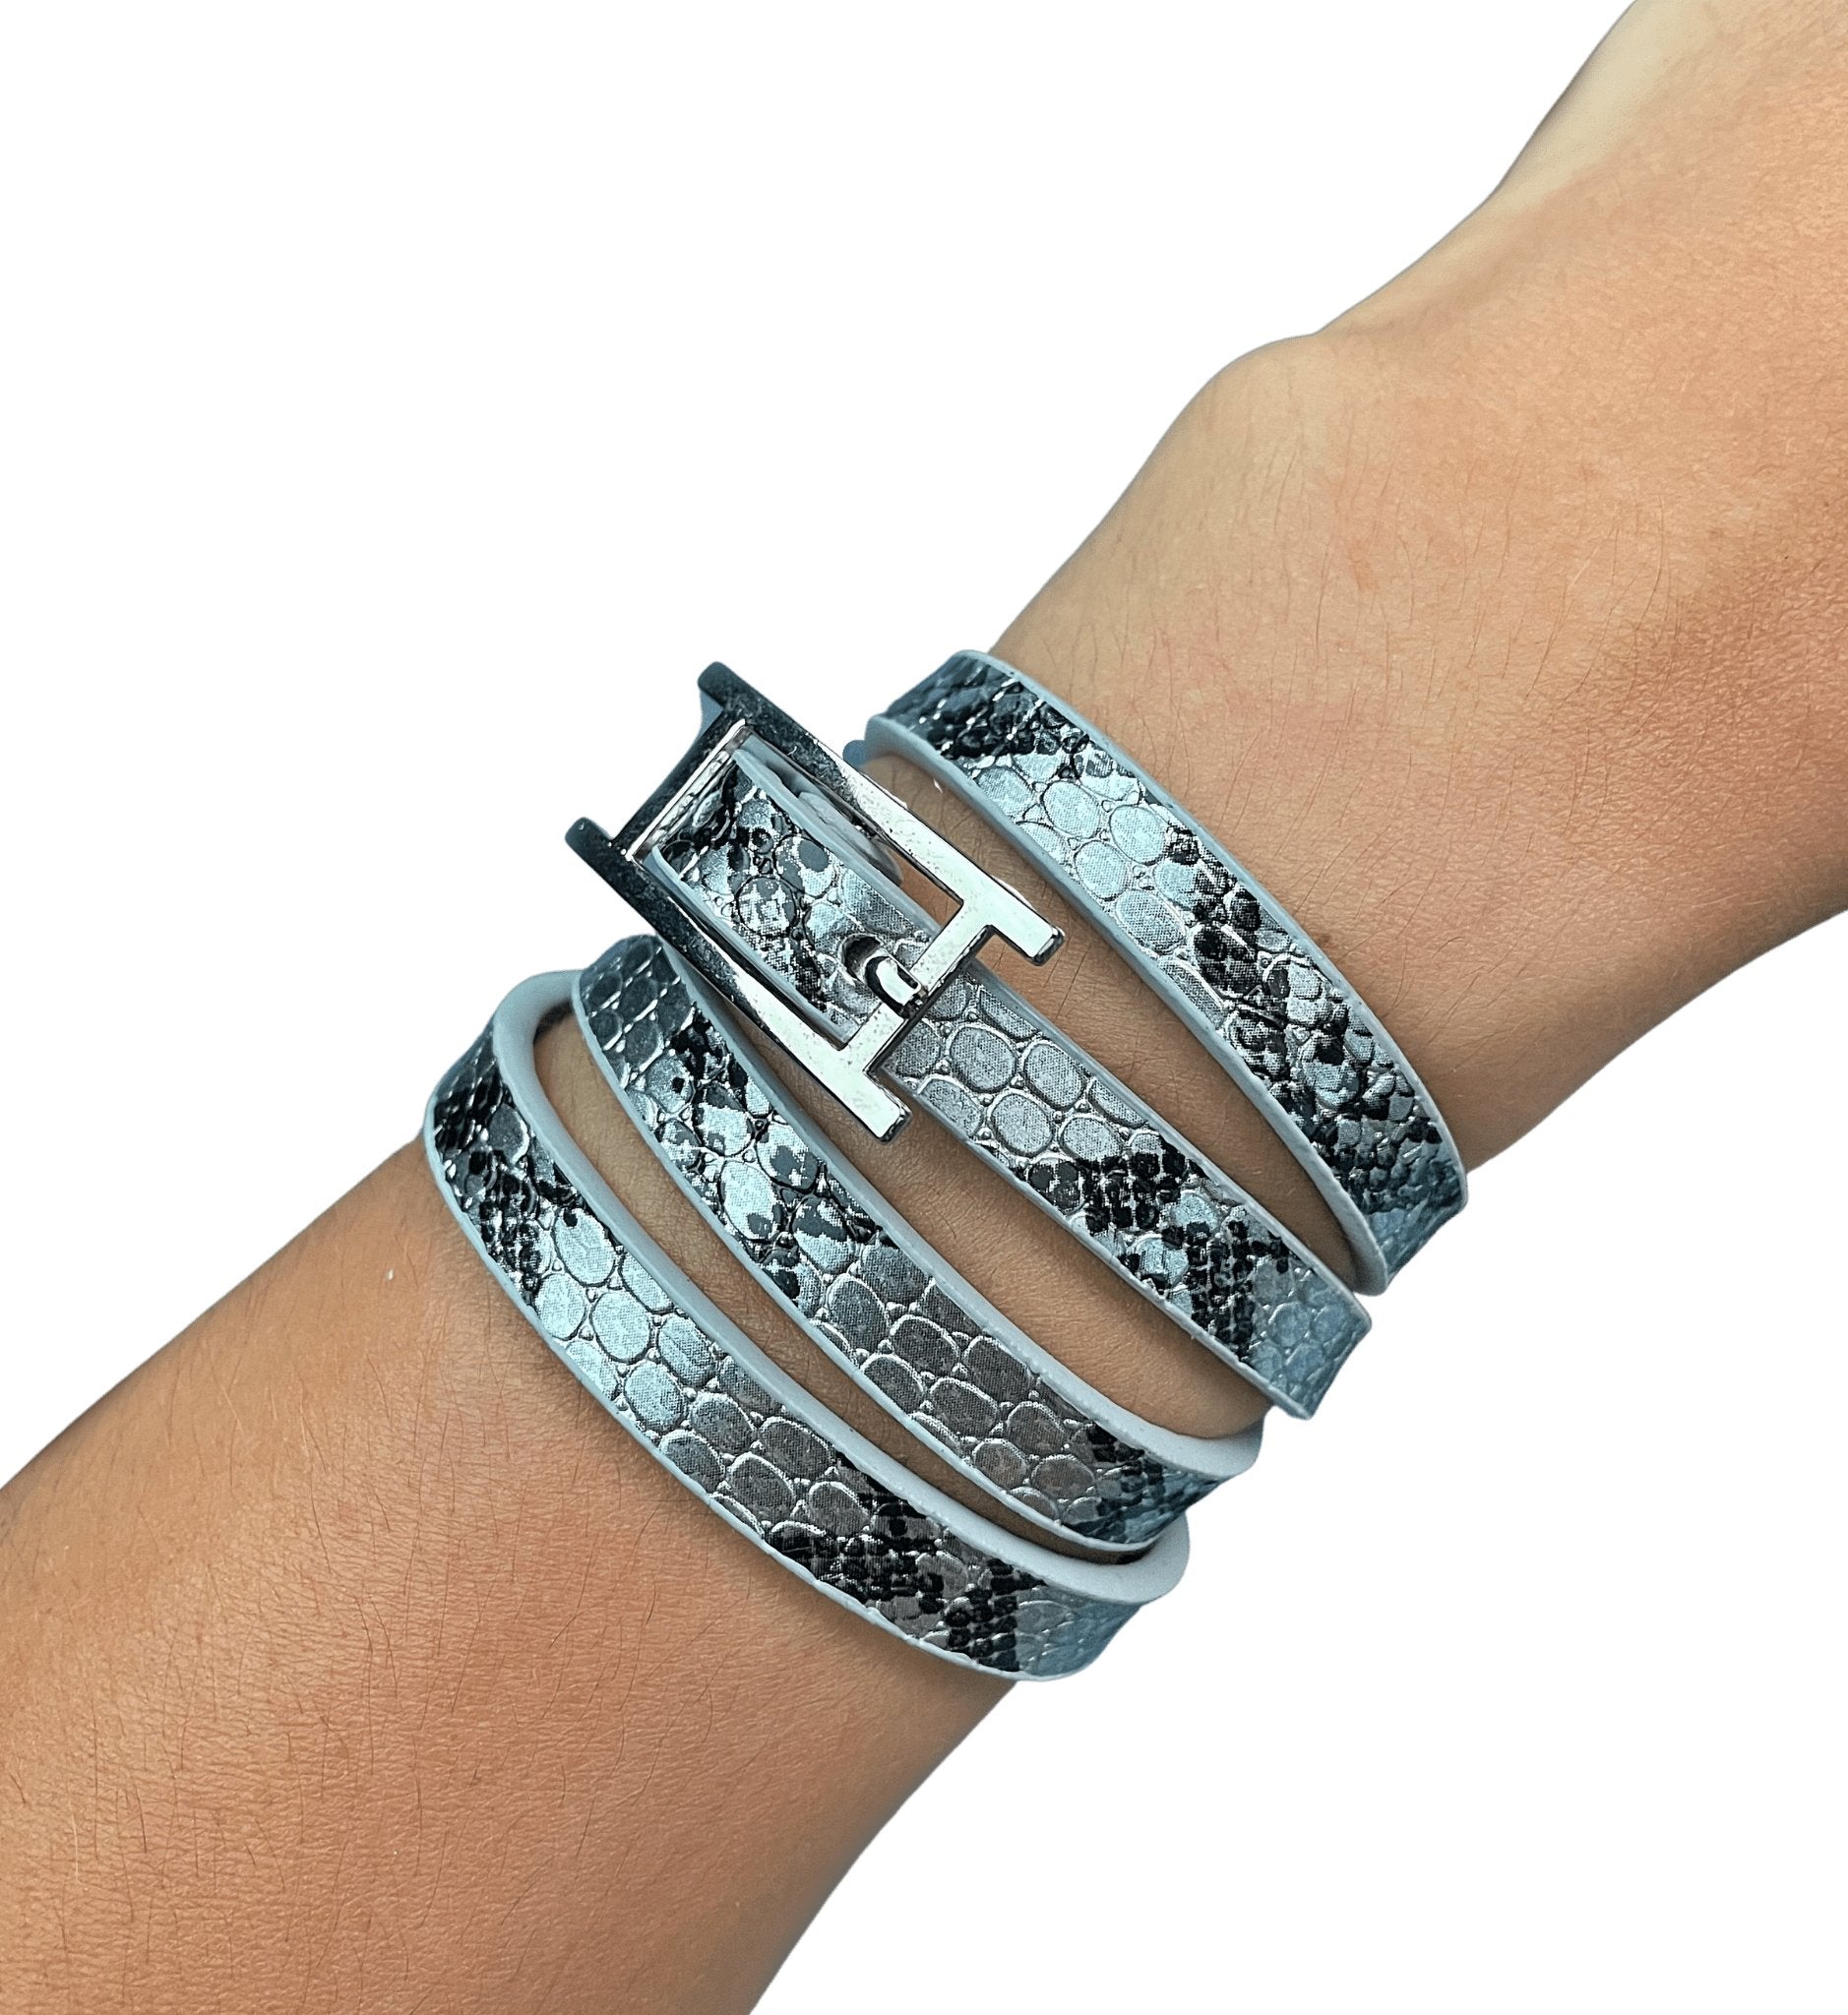 Louis Vuitton Patent Leather Wrap Bracelet